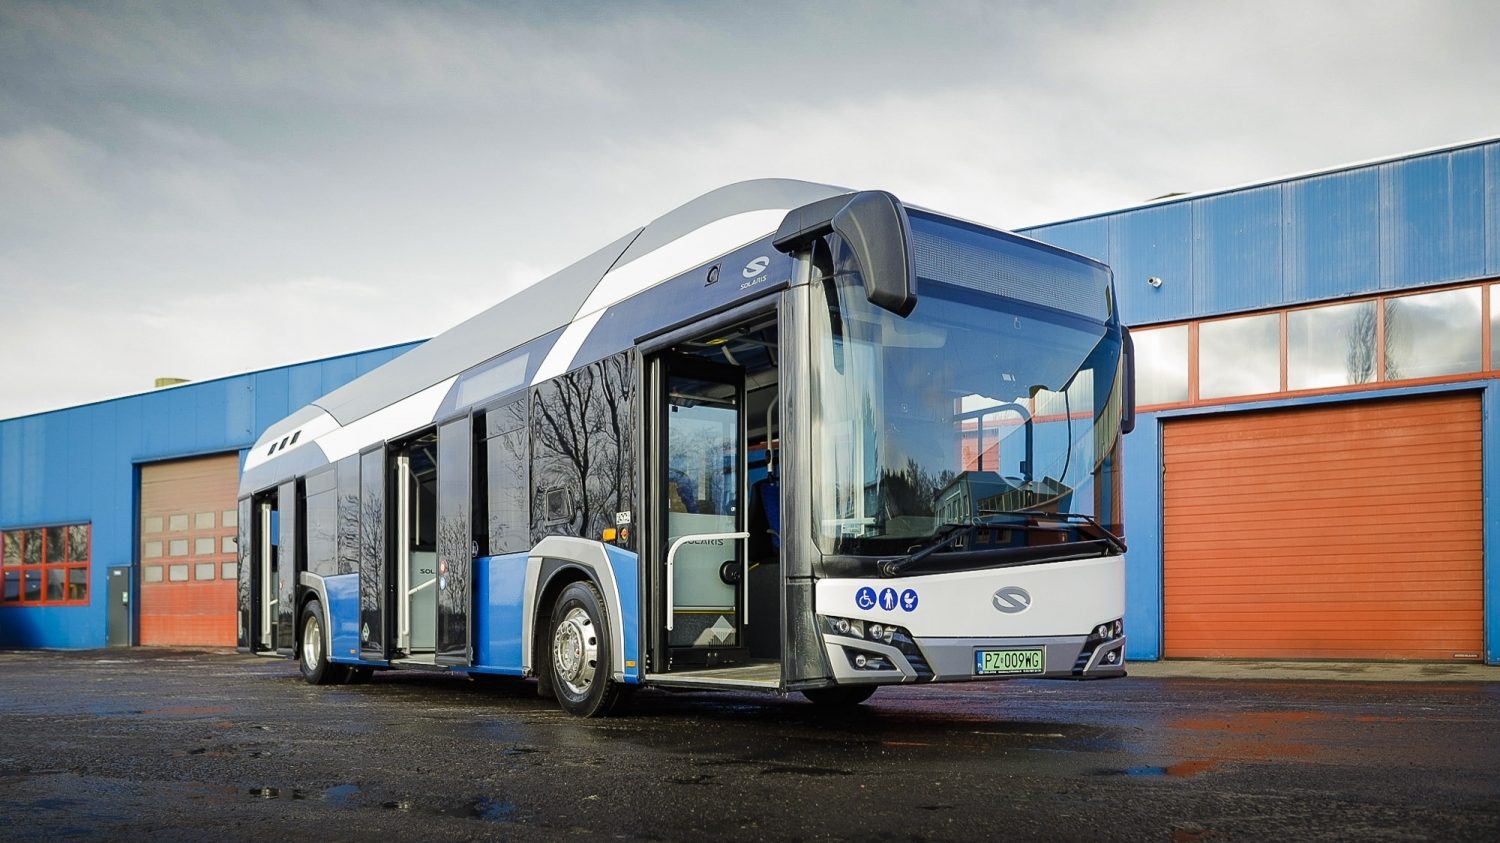 Solaris dosud podepsal smlouvy na dodávku více než 80 vodíkových autobusů. Konkurenci má na trhu naprosto zanedbatelnou. (foto: Solaris Bus & Coach)